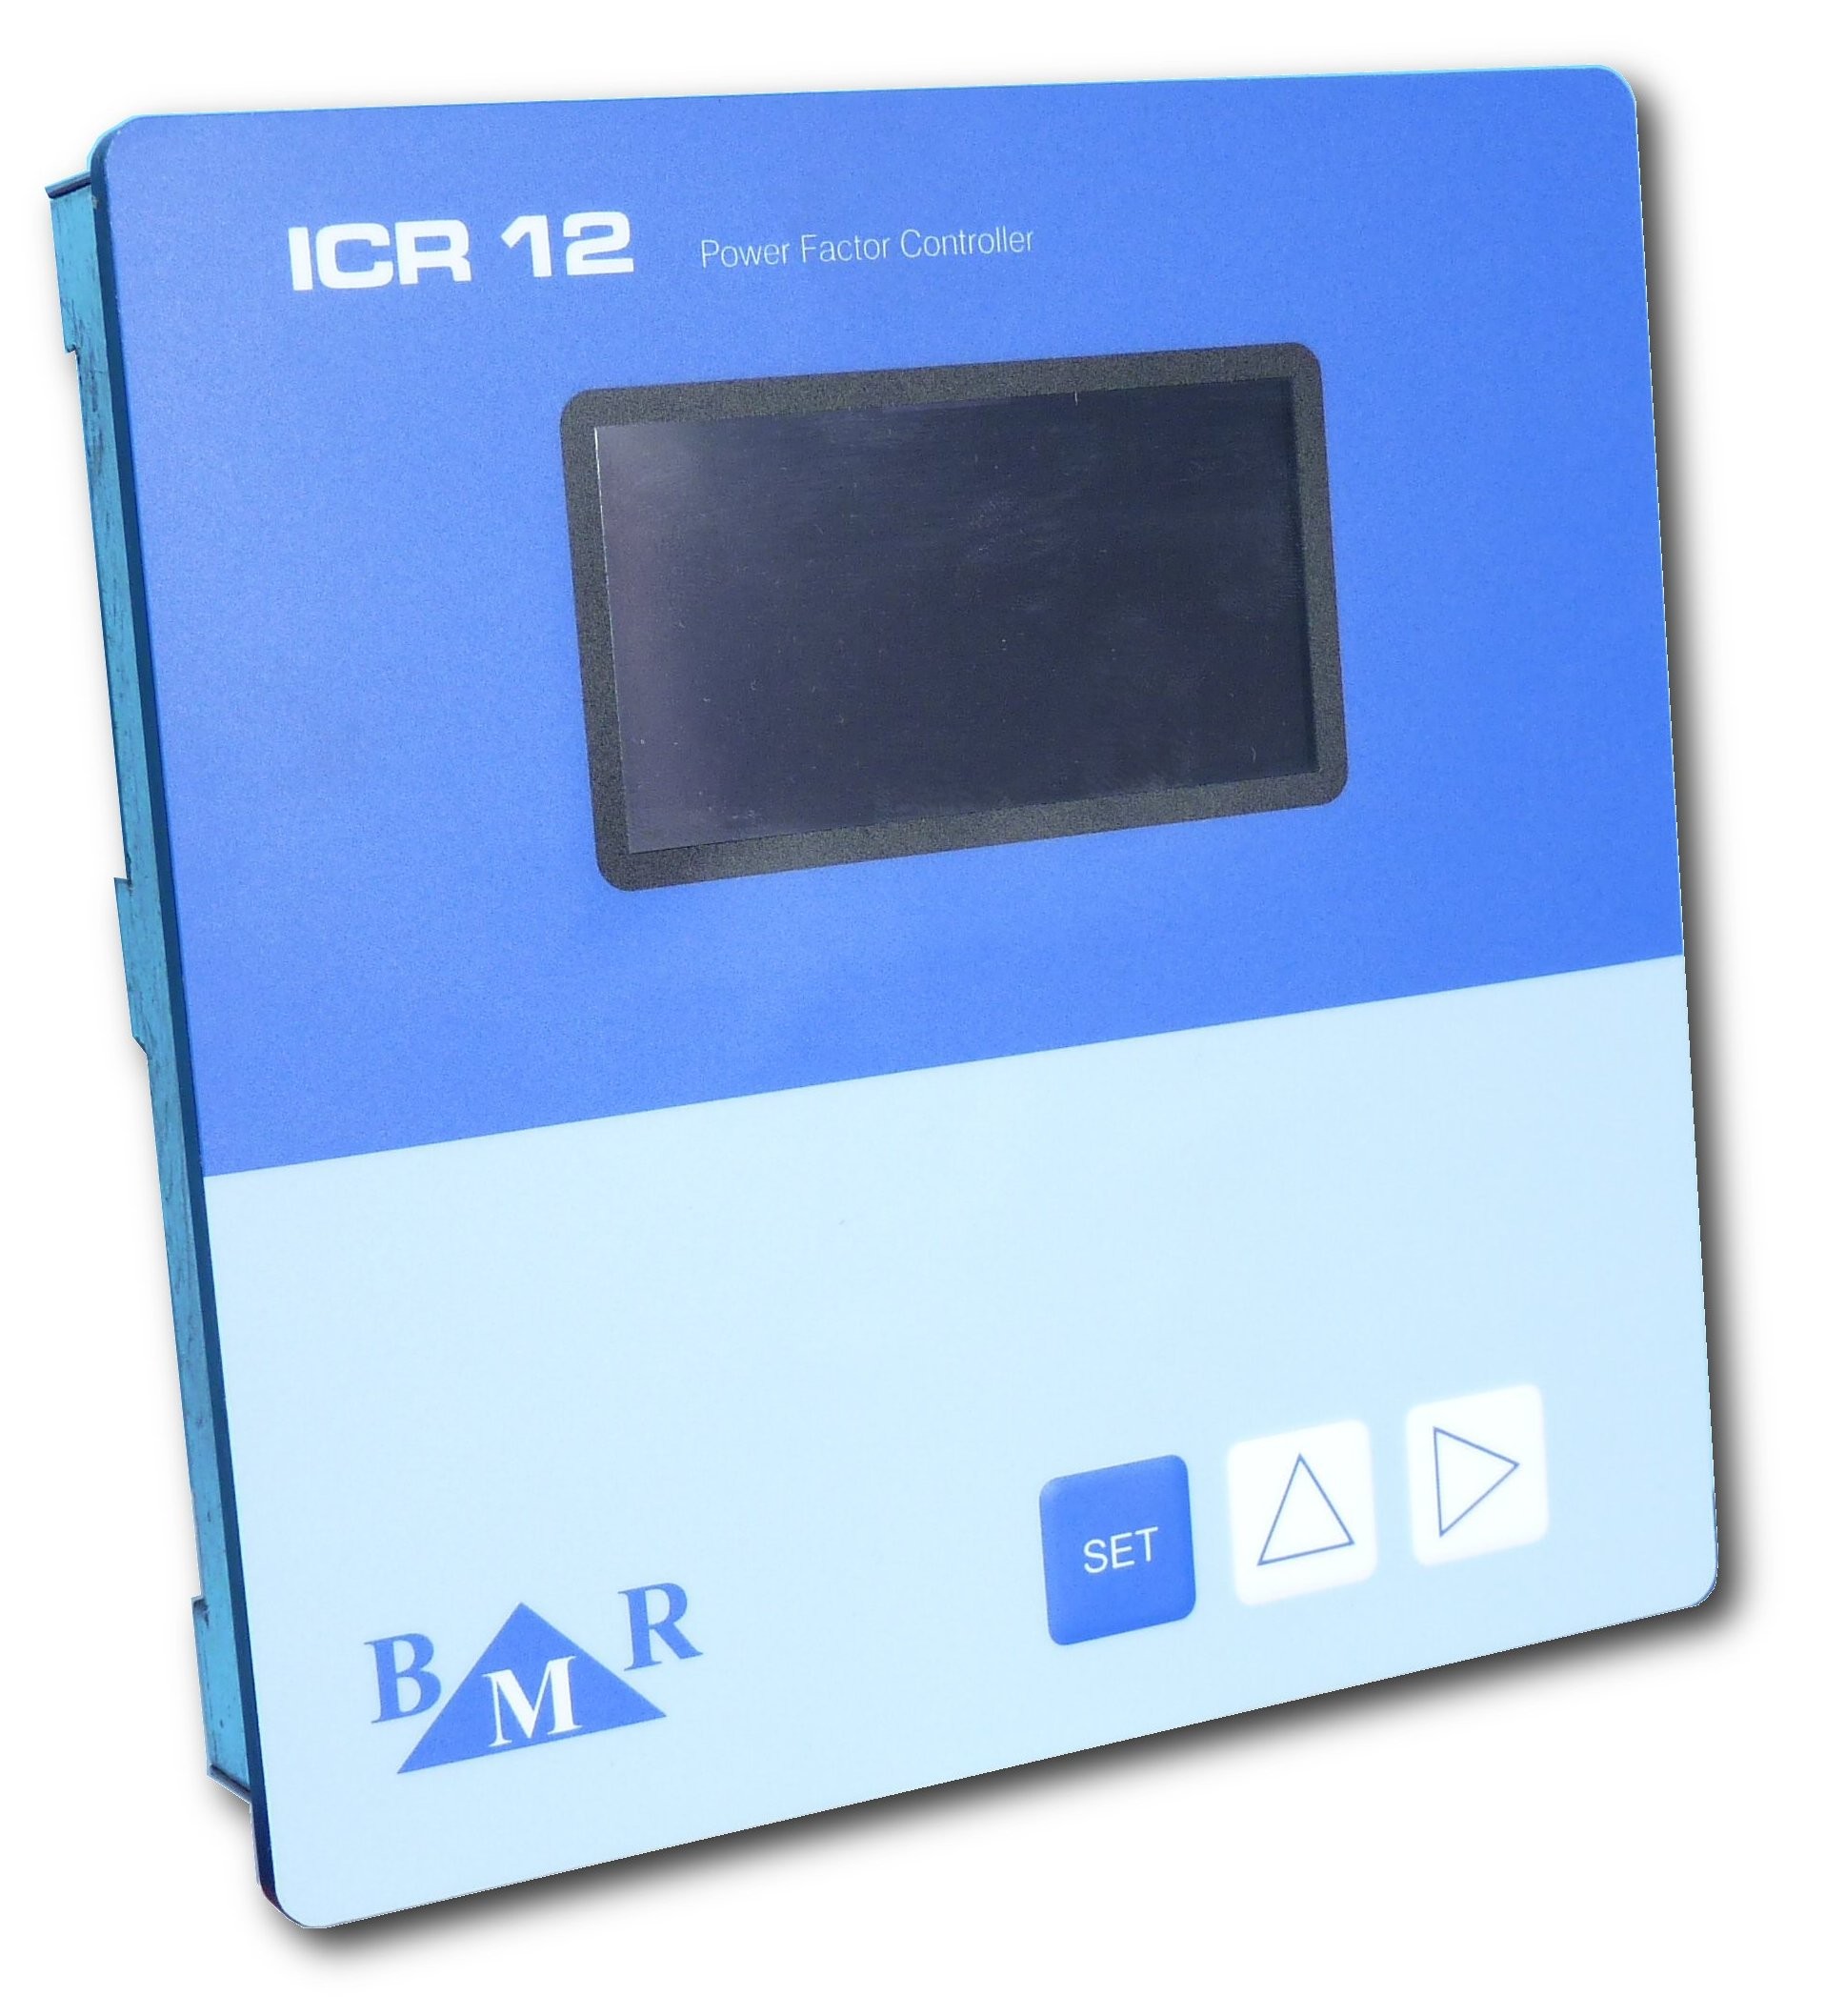 ICR 06, ICR 12